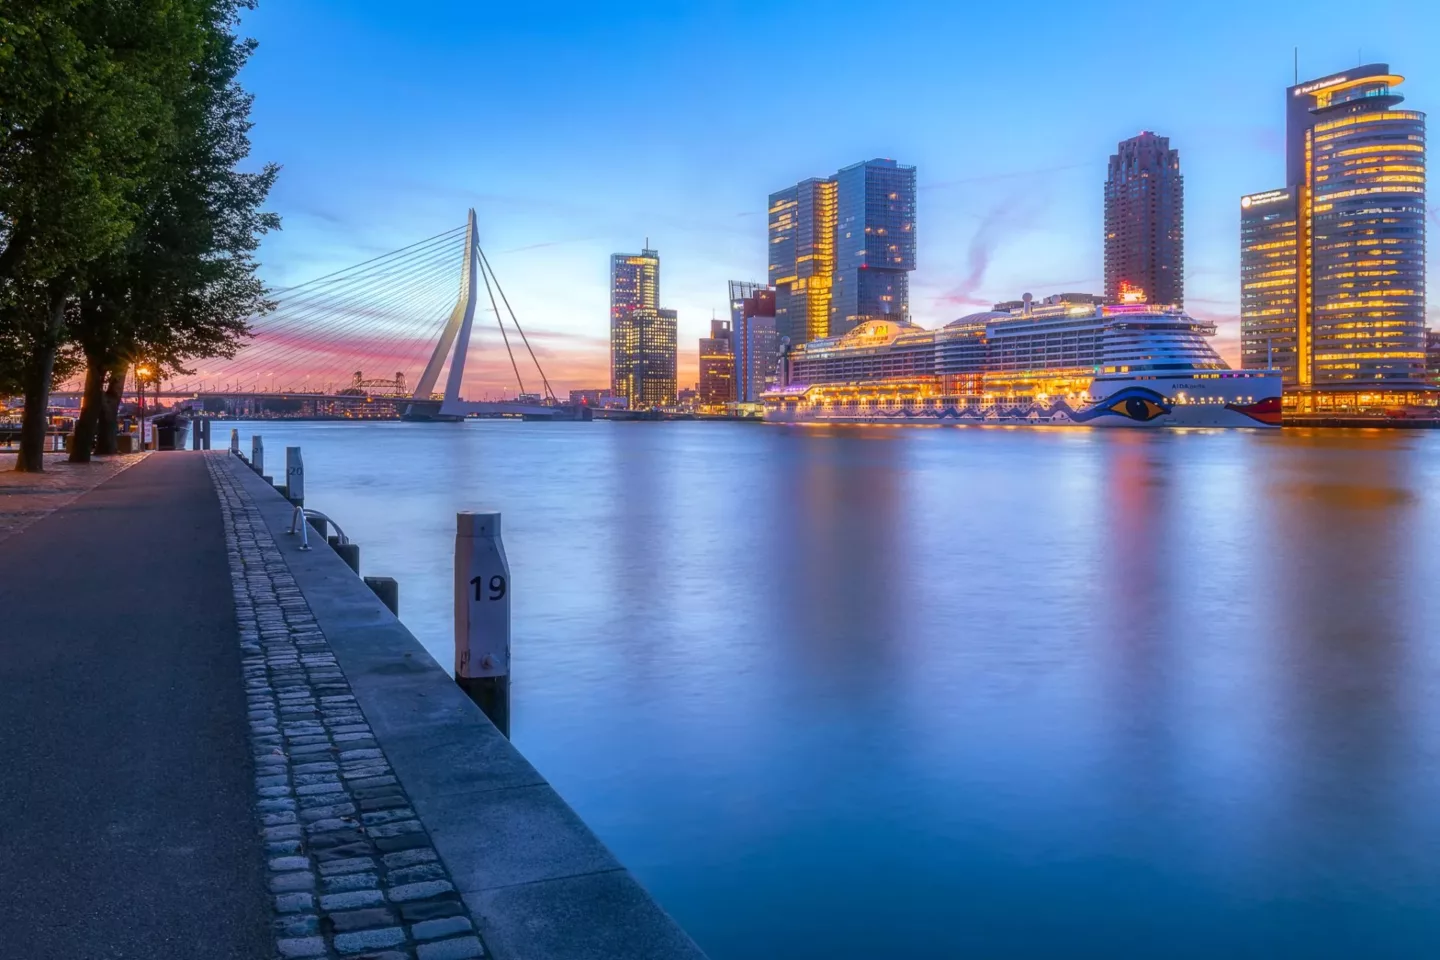 Een vroege morgen bij de Erasmusbrug (Rotterdam)